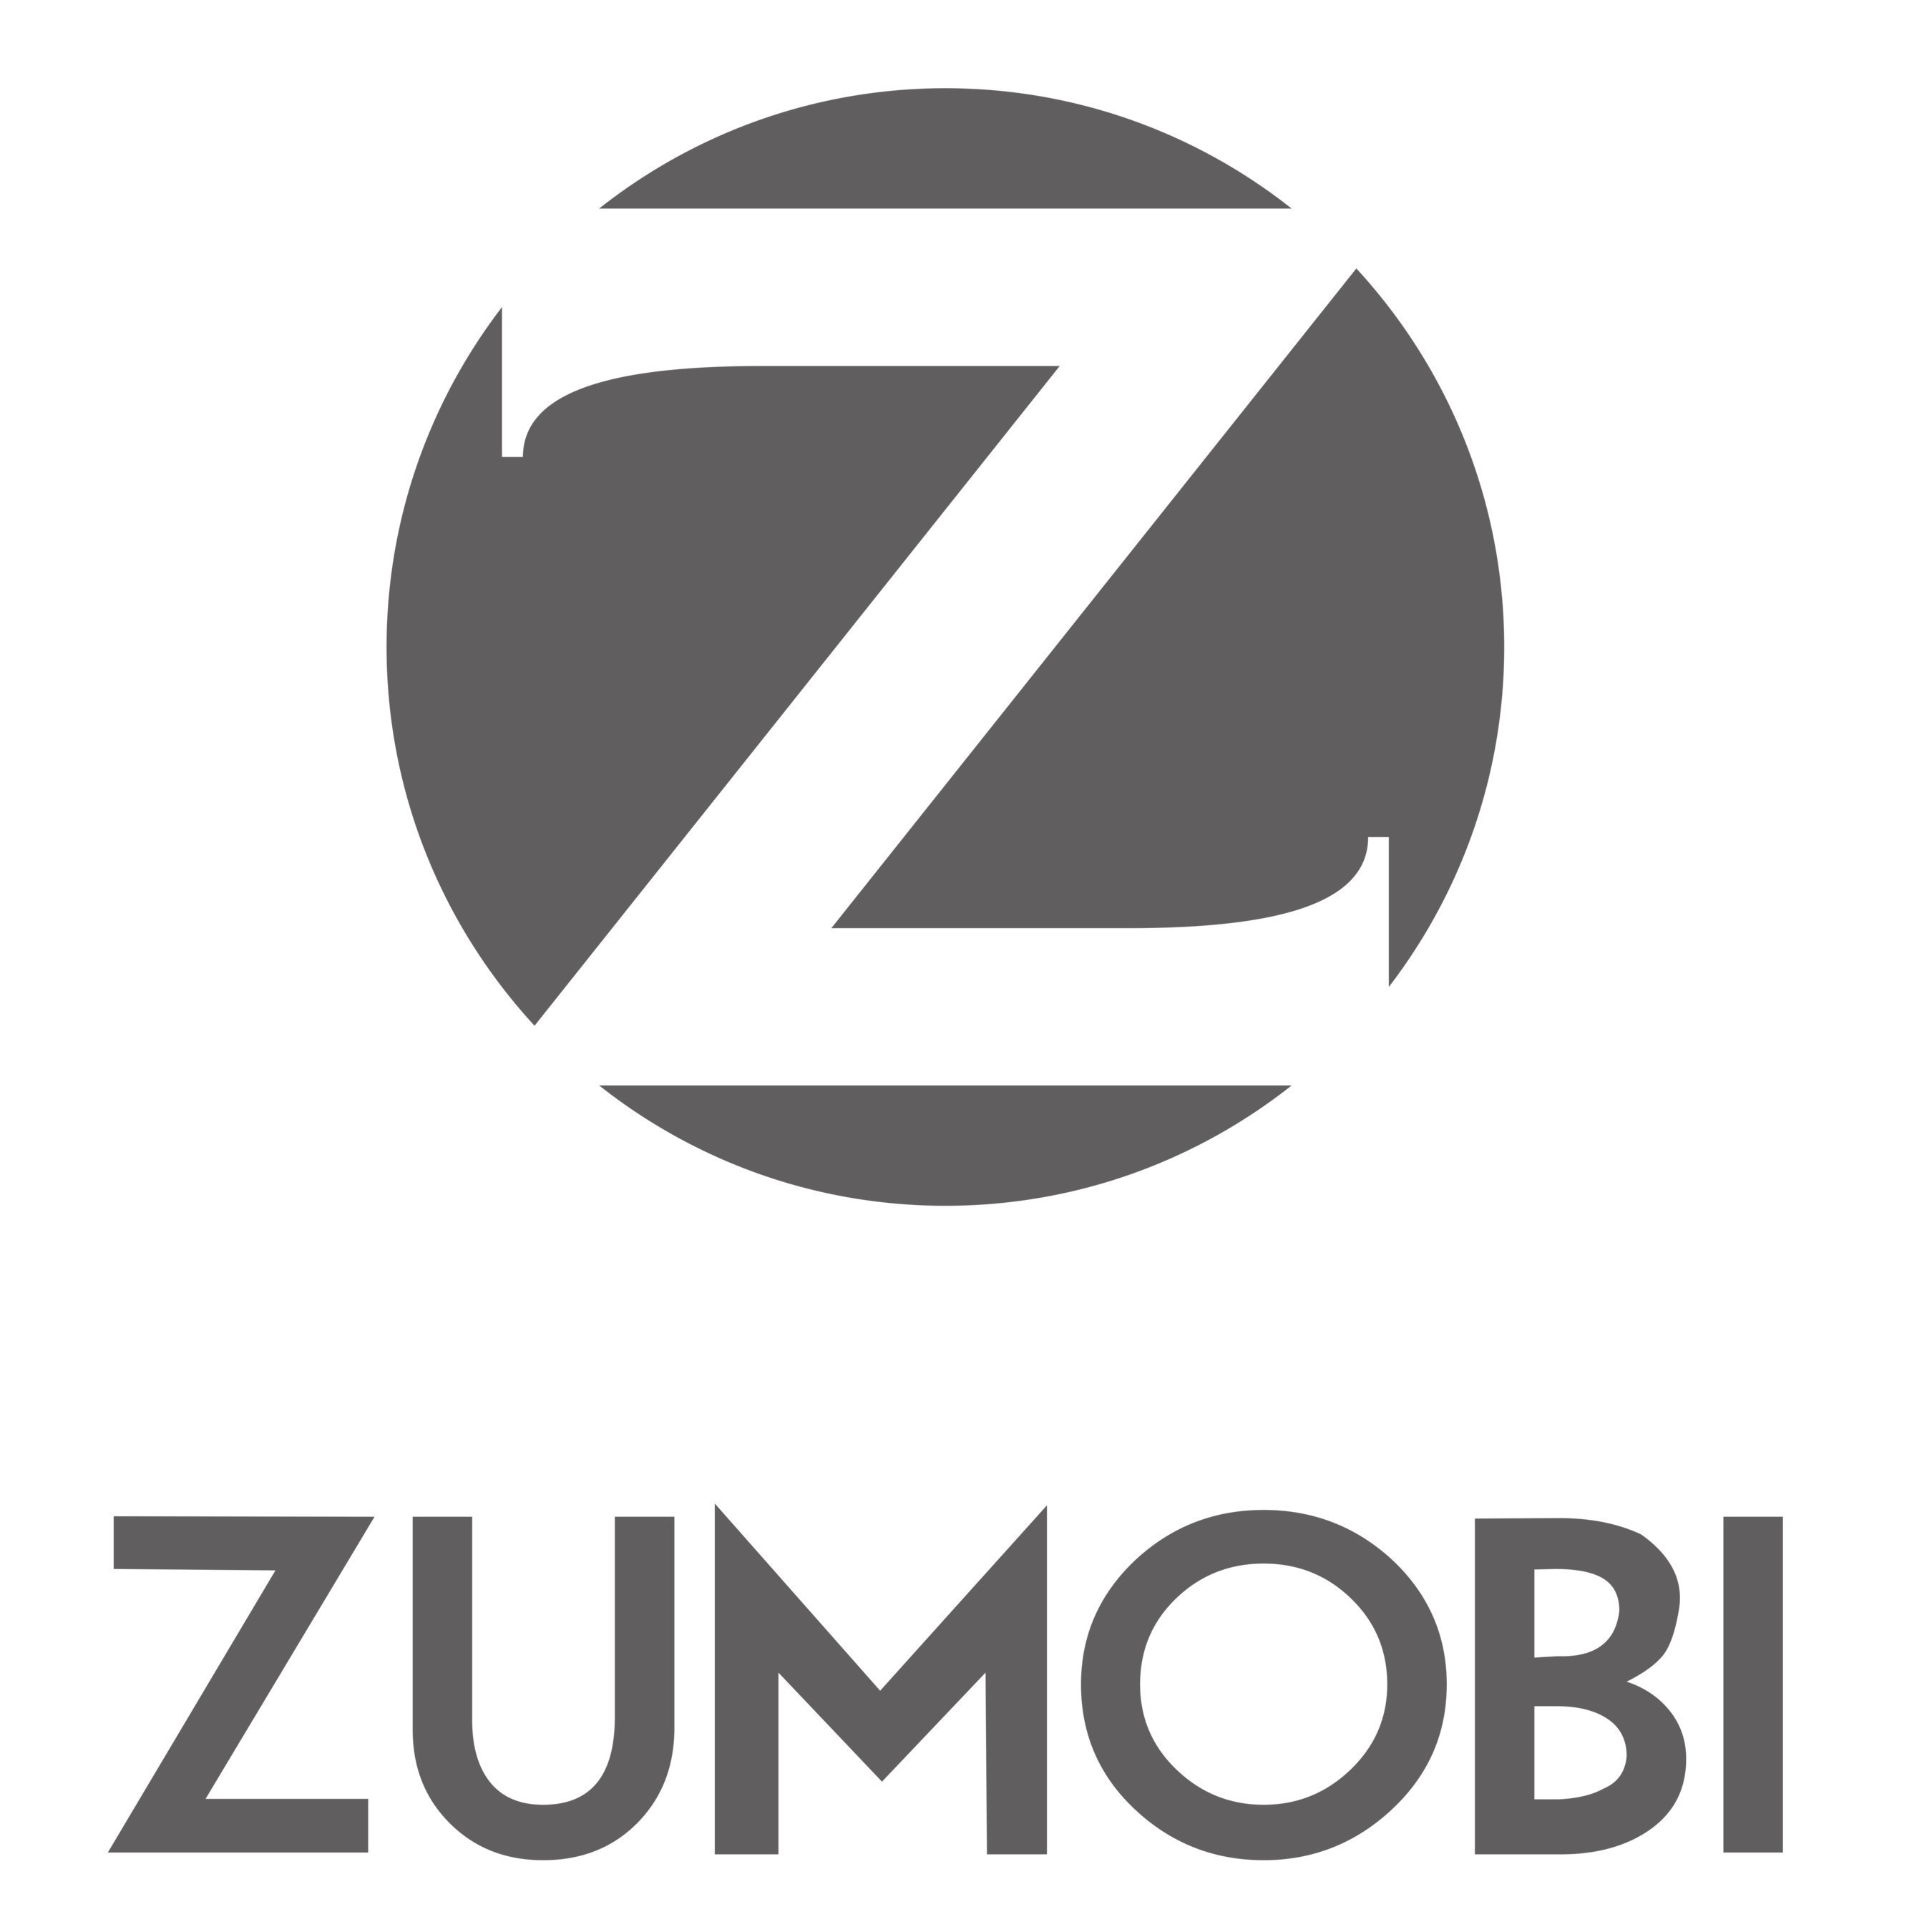 Zumobi (PRNewsFoto/Zumobi)